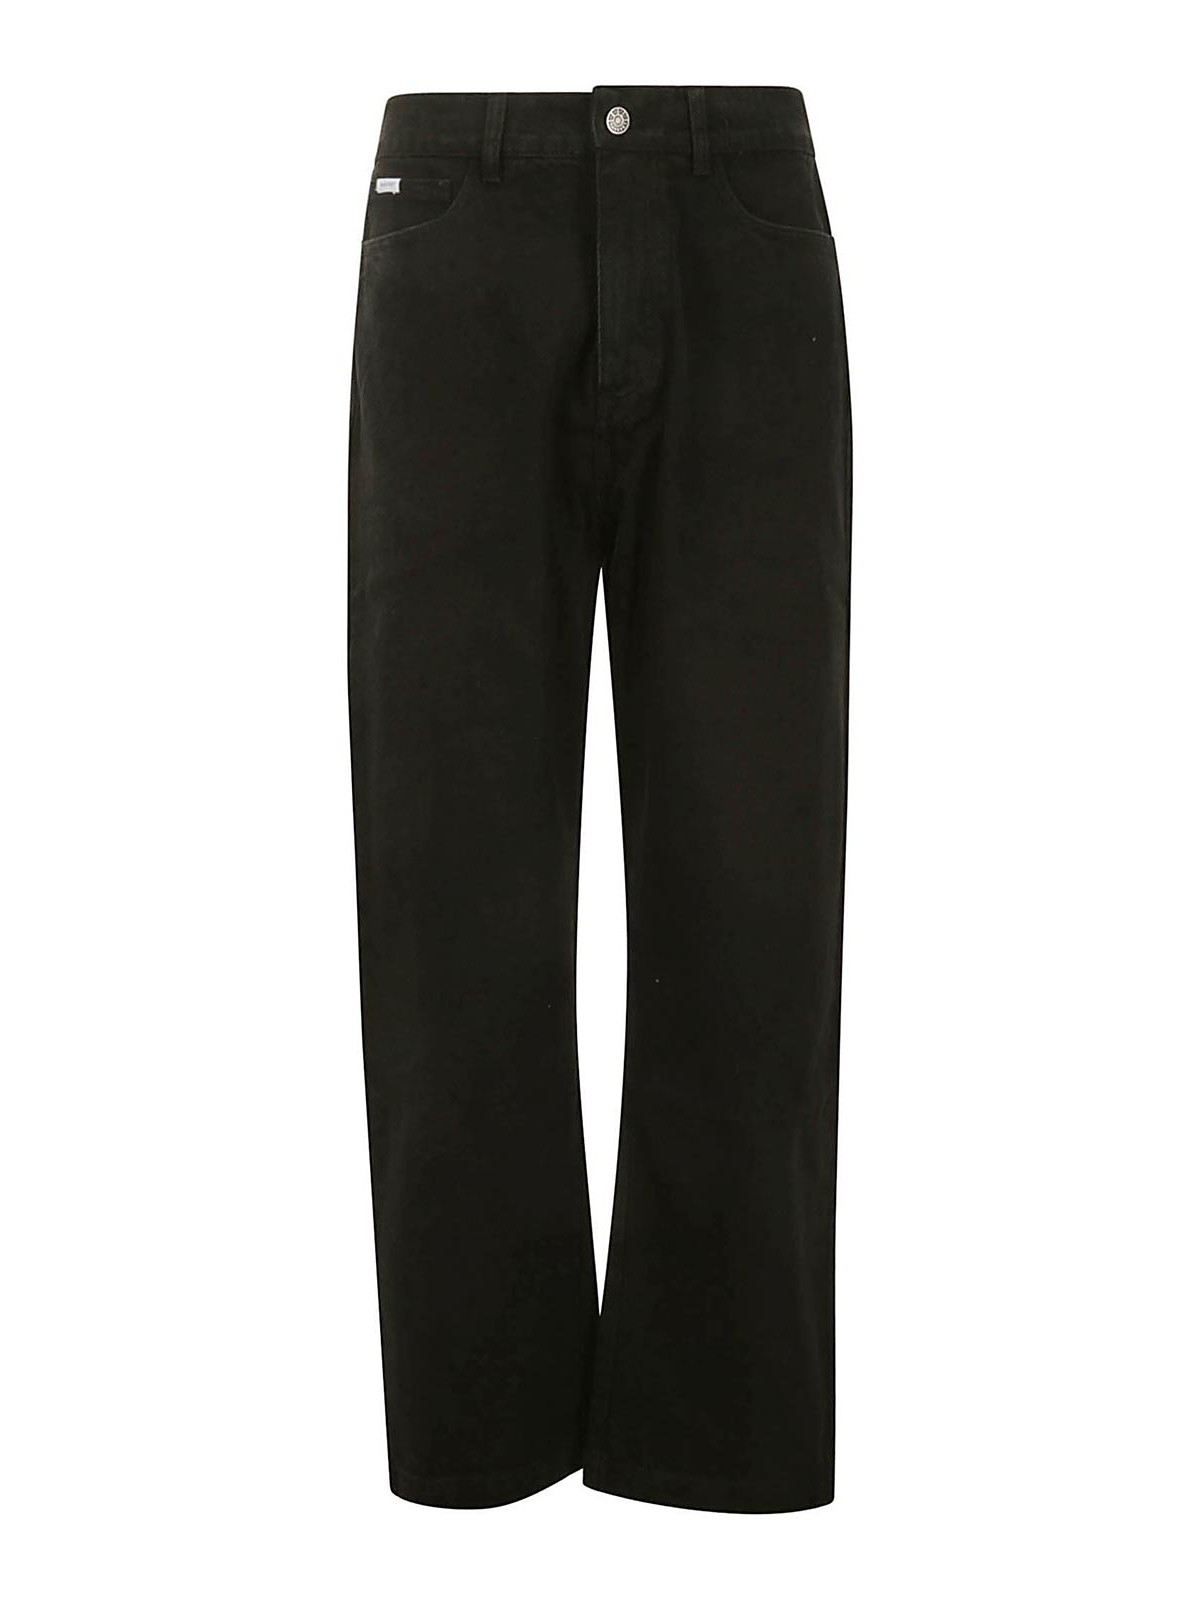 Shop Rassvet Classic Denim Trousers In Black